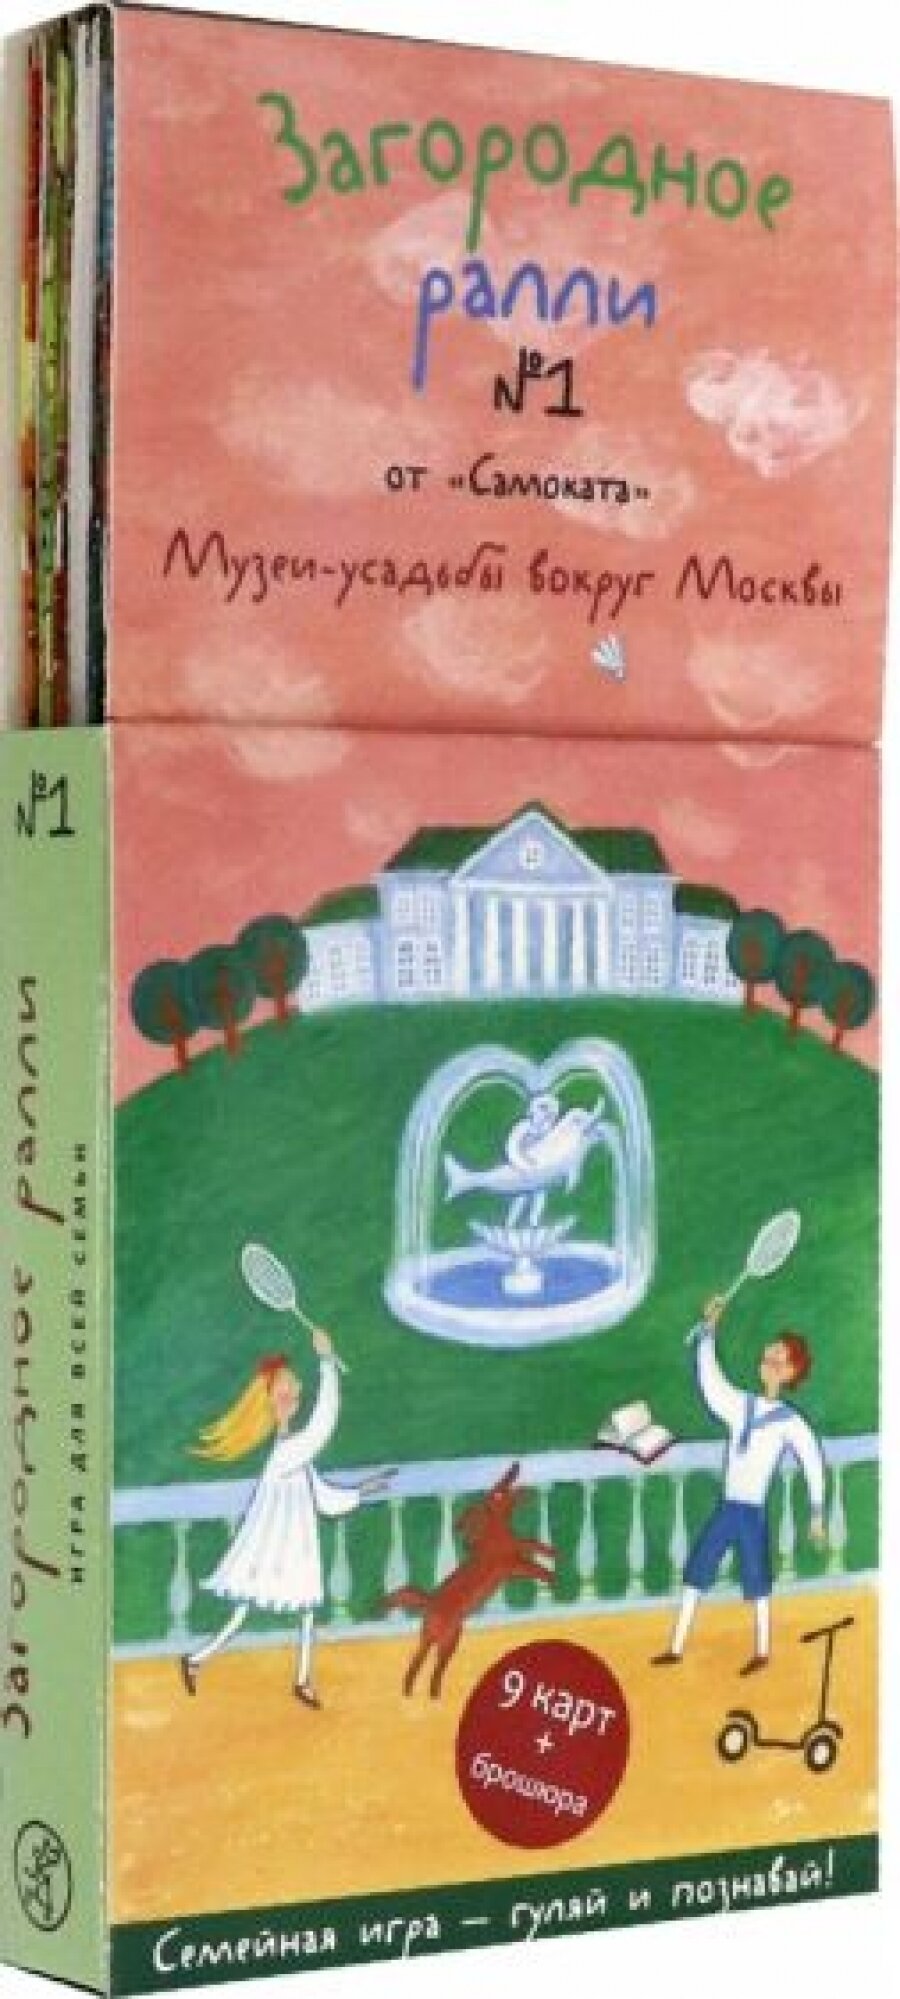 Загородное ралли № 1 от "Самоката". Музеи-усадьбы вокруг Москвы. 9 карт+брошюра - фото №11